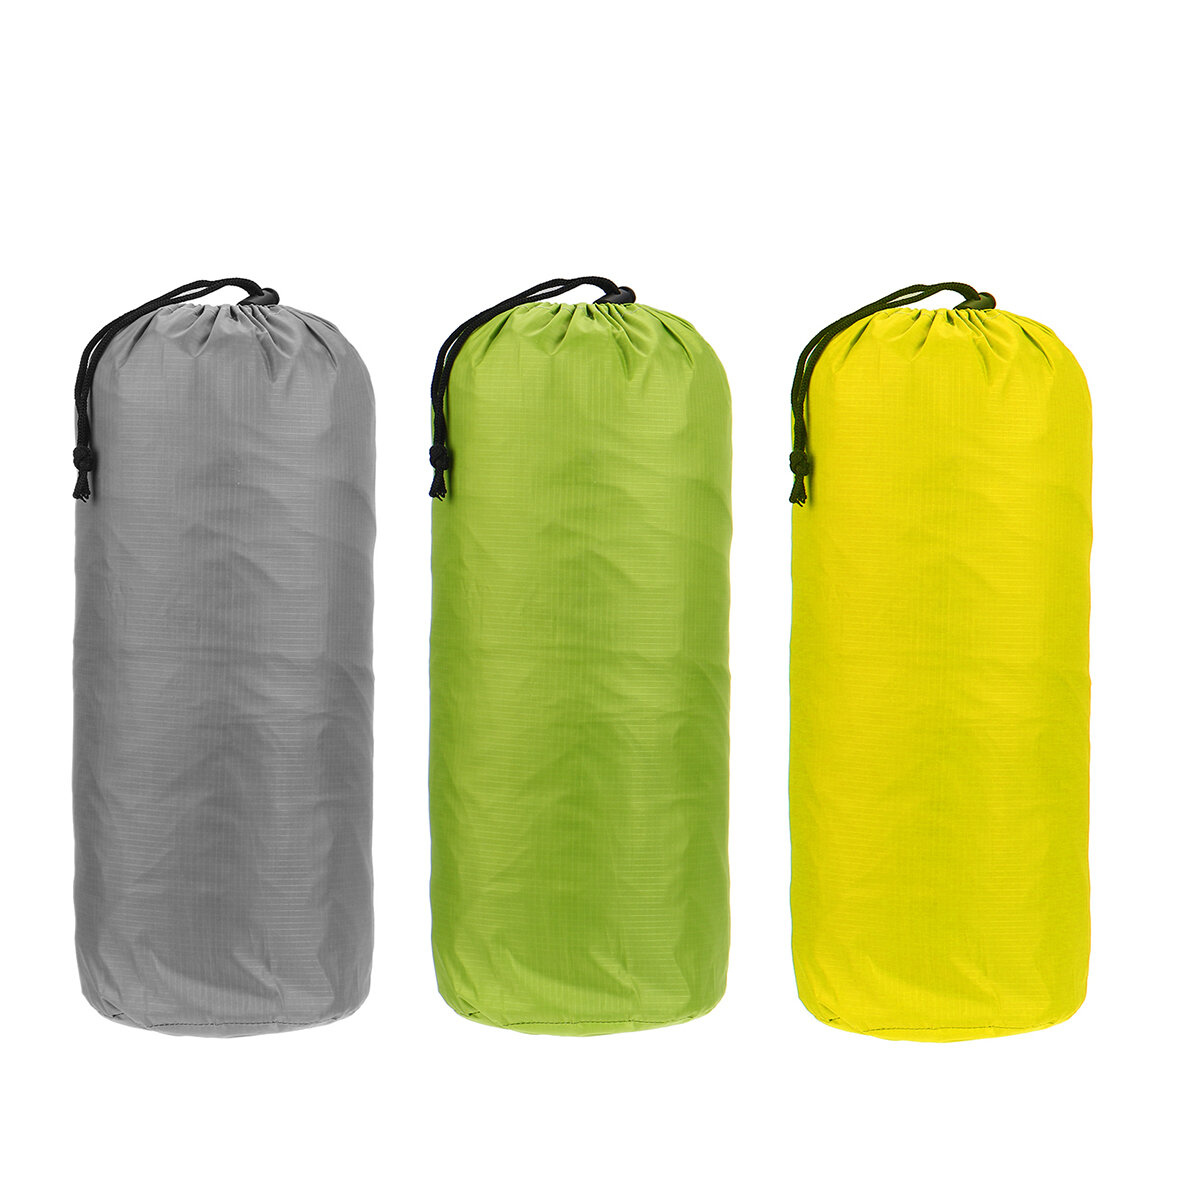 屋外超軽量バックパッキングテントポールレスポータブルA型防水＆日焼け止めテントキャンプ用品